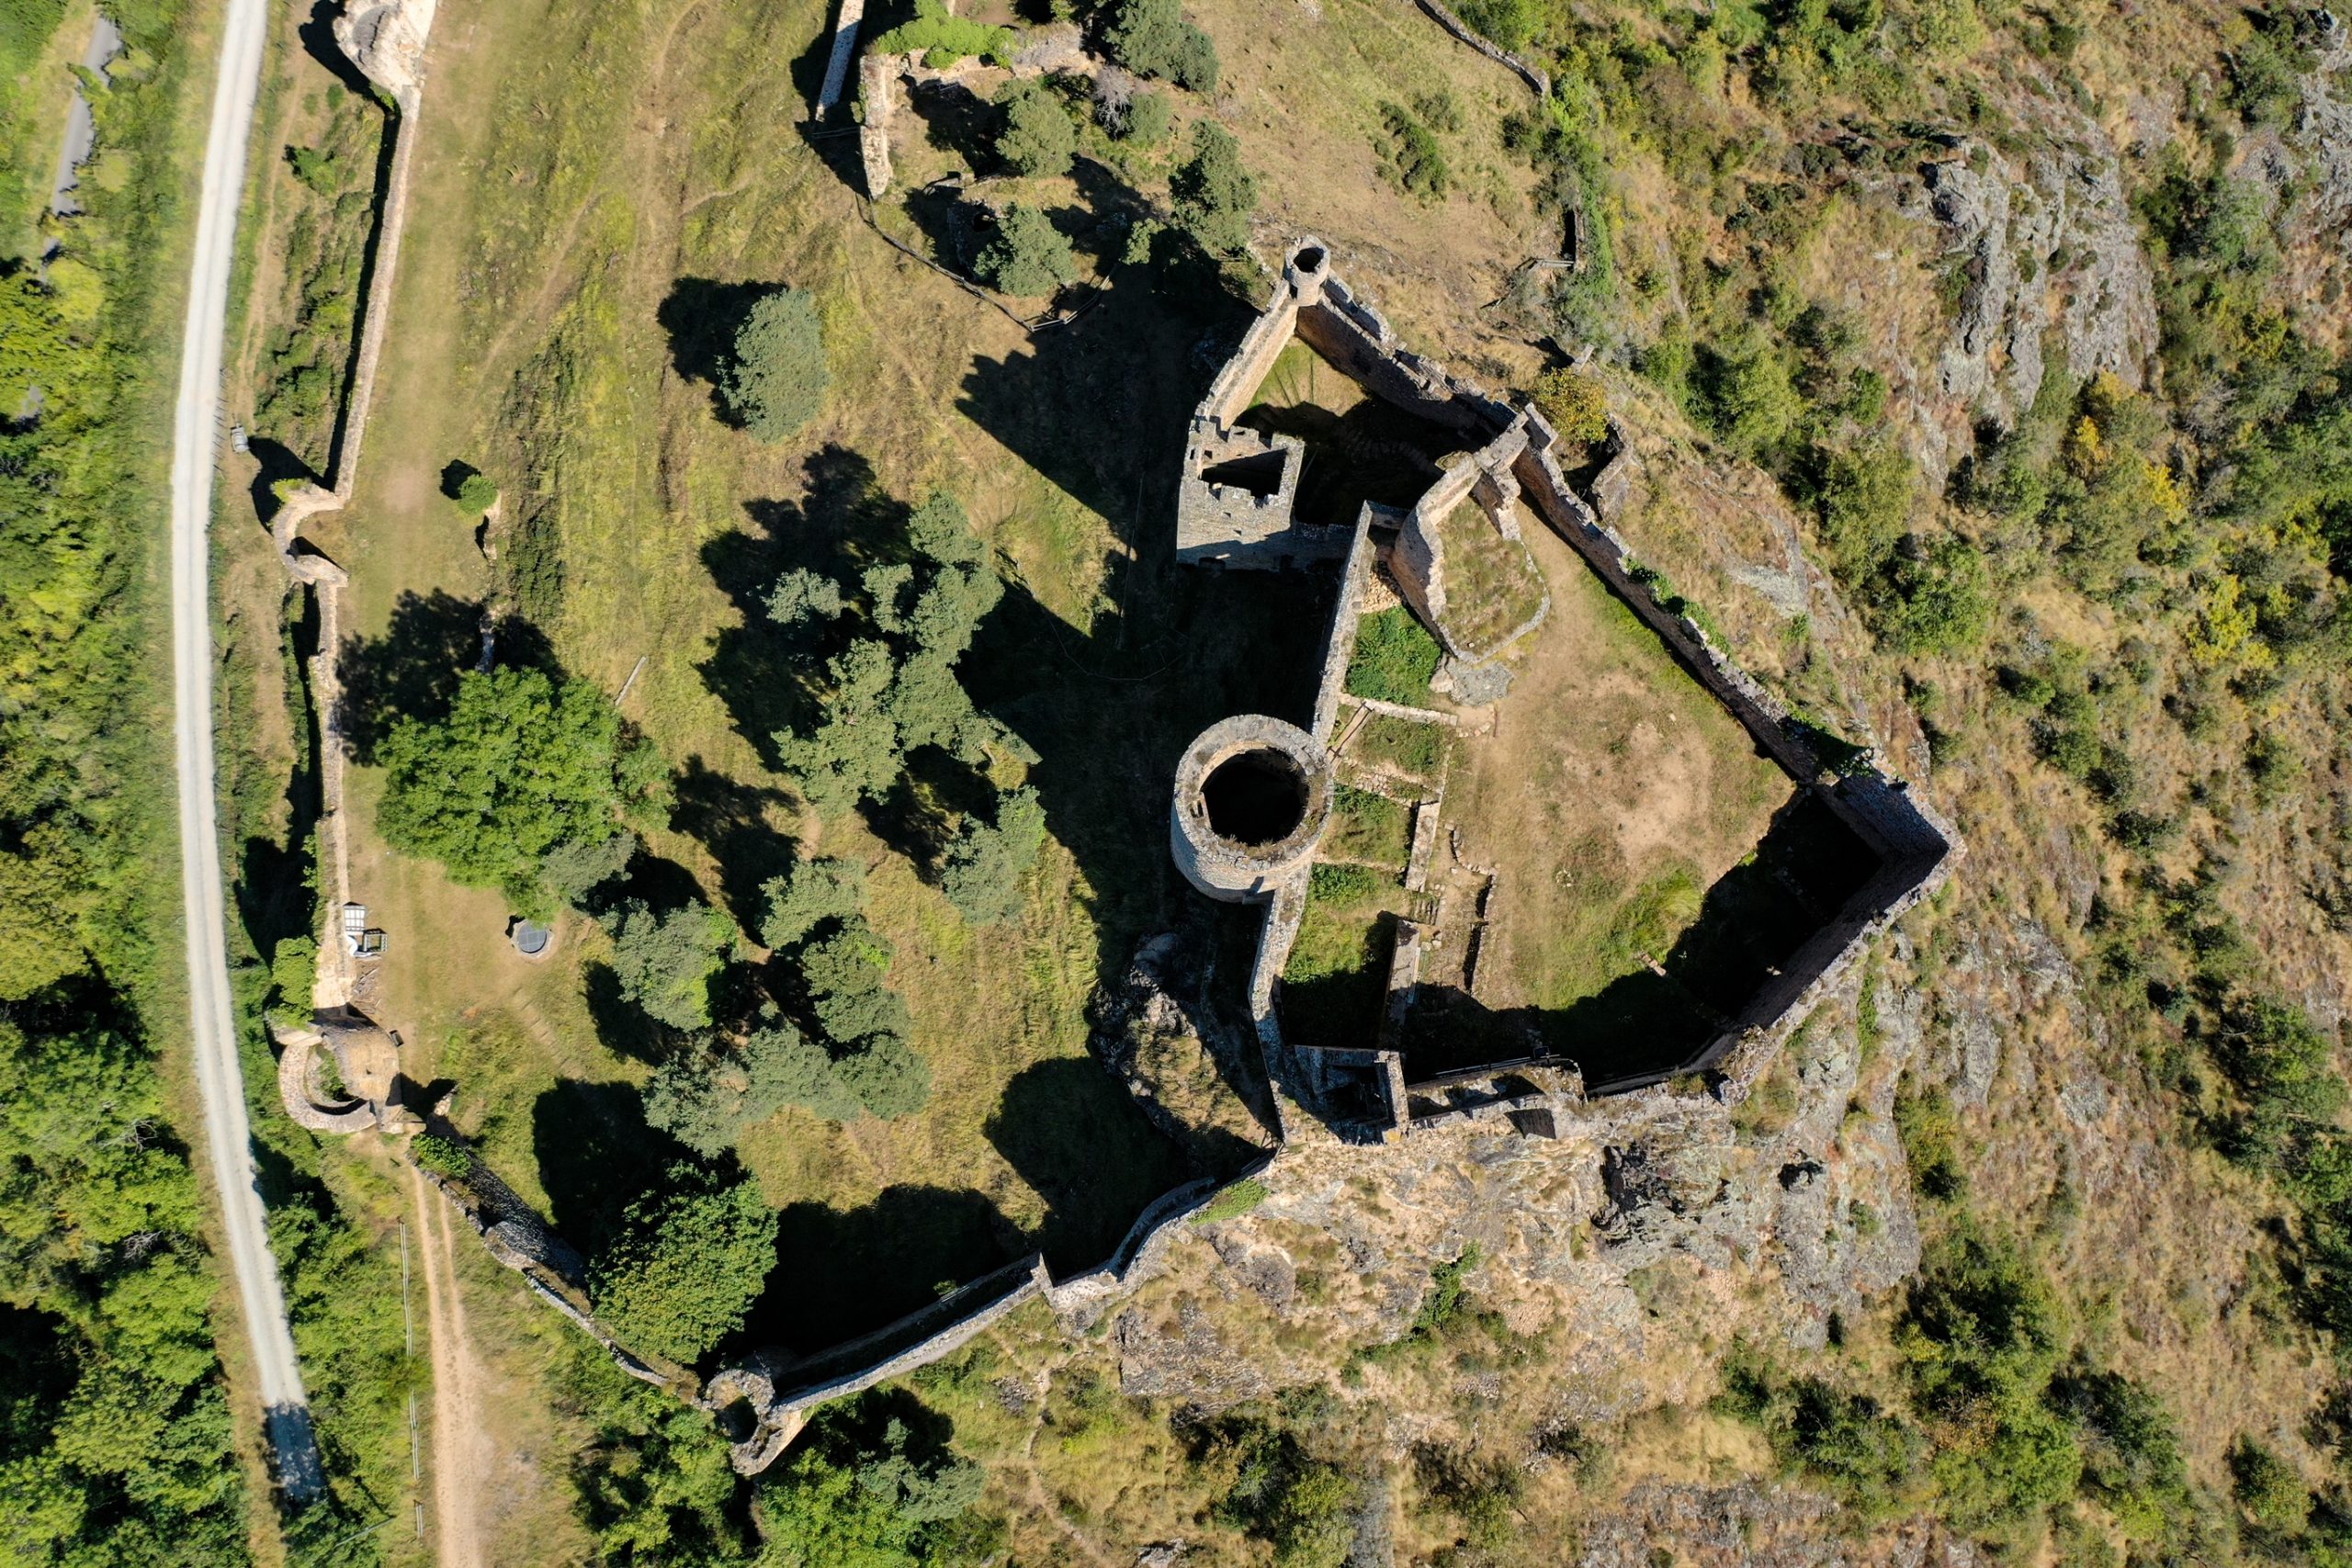 chateau de cousin vue en drone